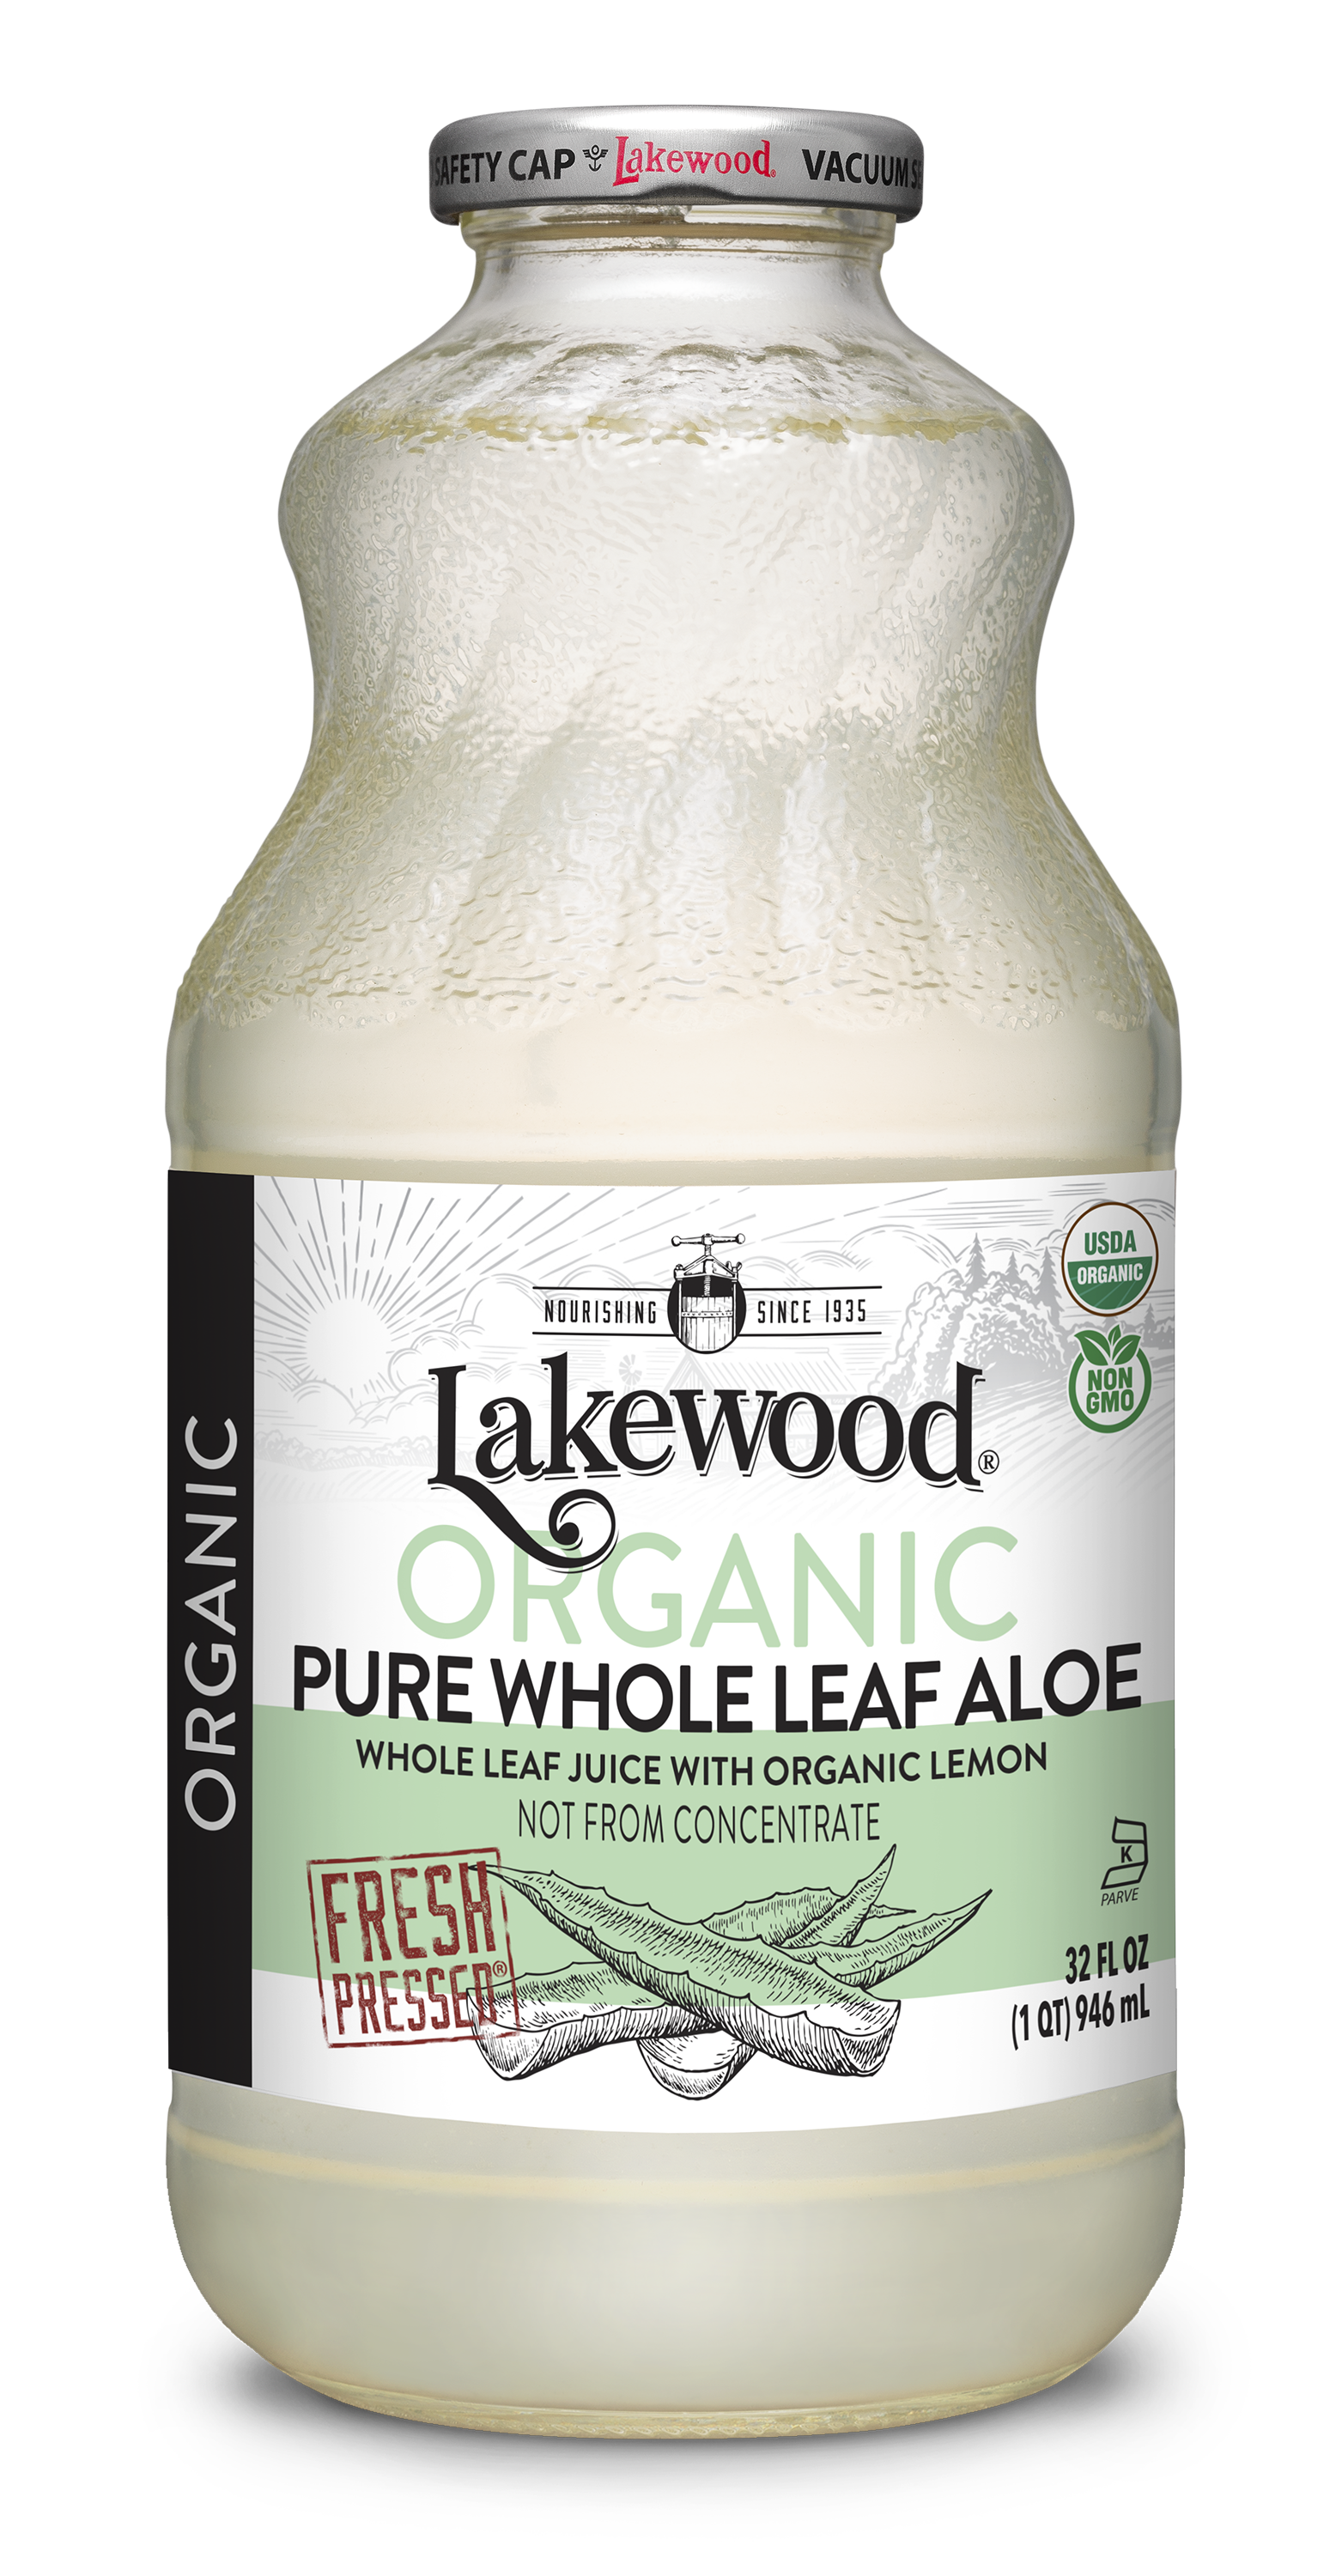 lakewood-organic-pure-whole-leaf-aloe-juice-fresh-pressed